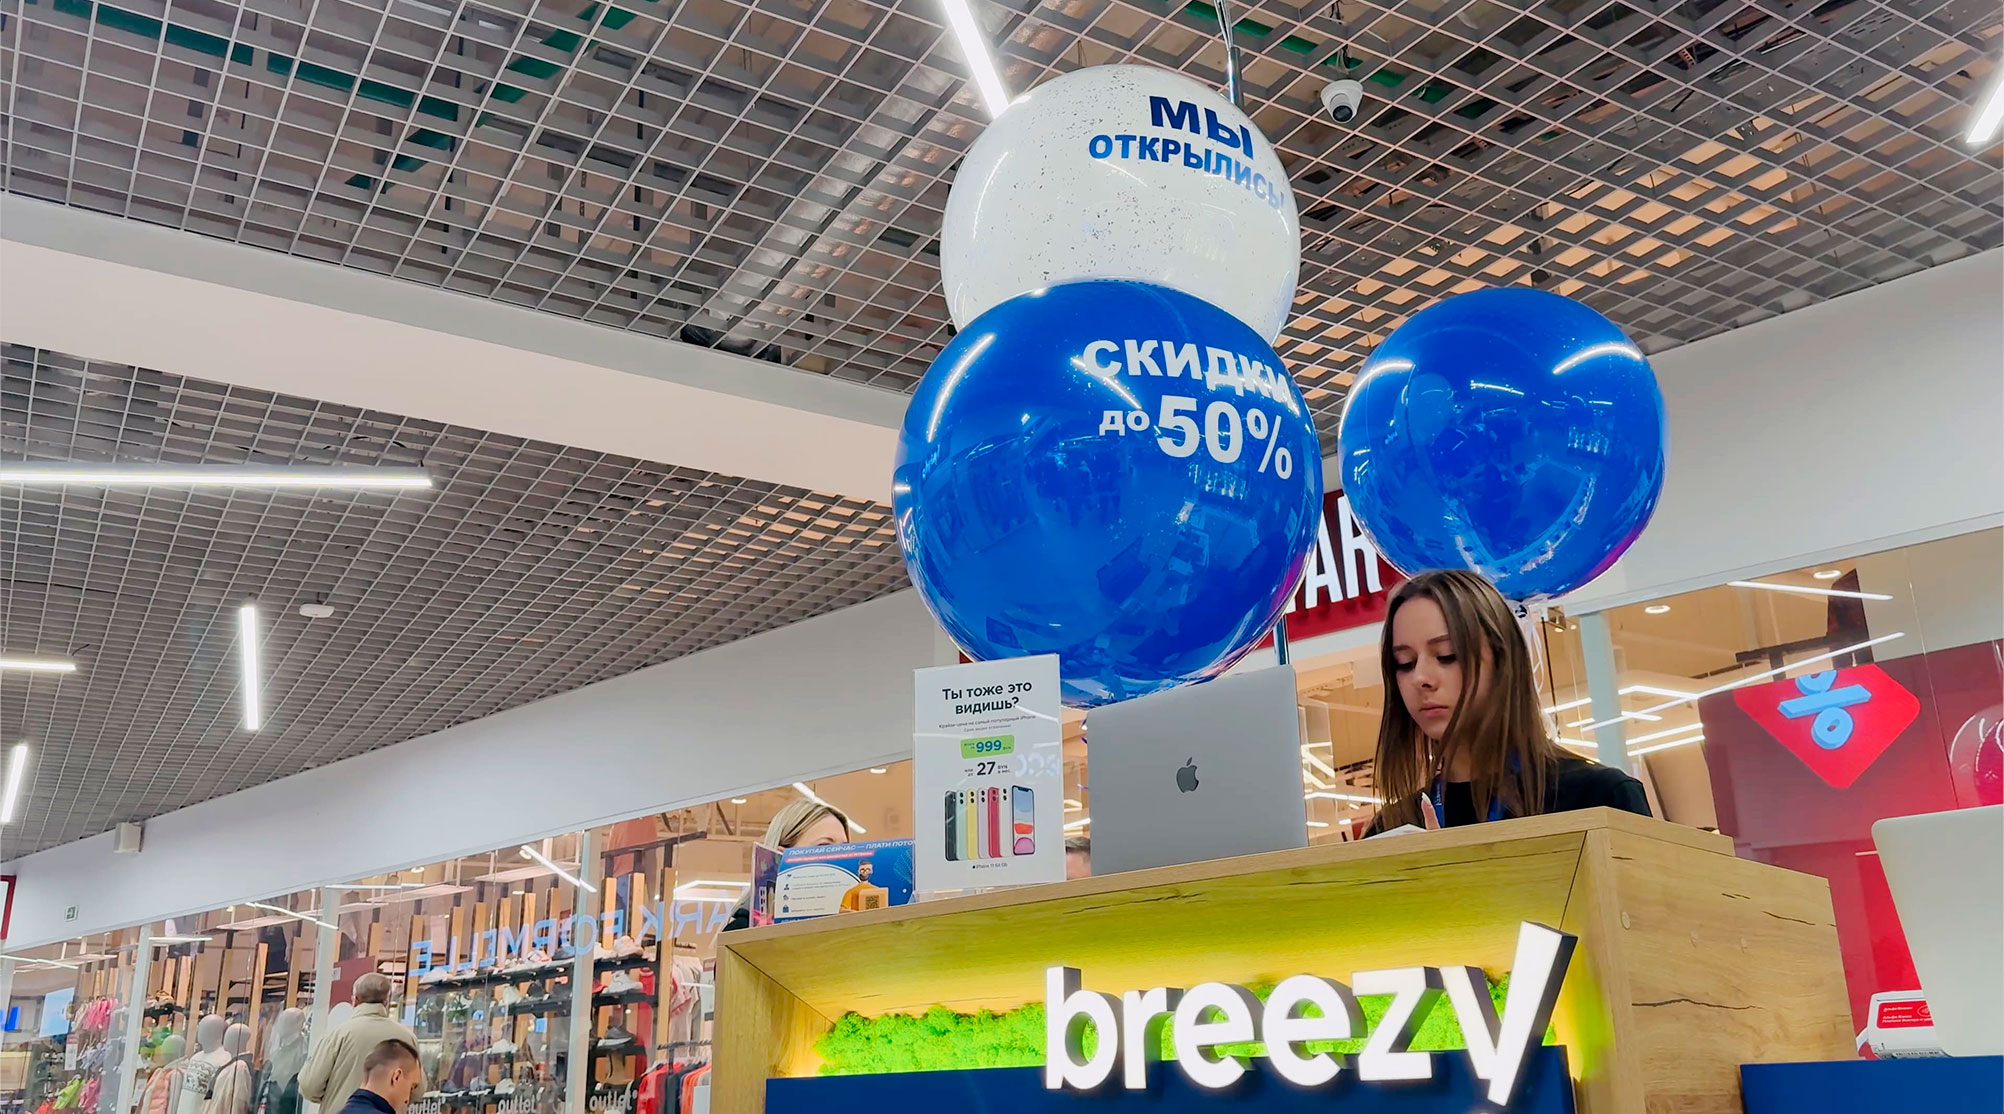 В Минске появился инновационный Breezy iSland